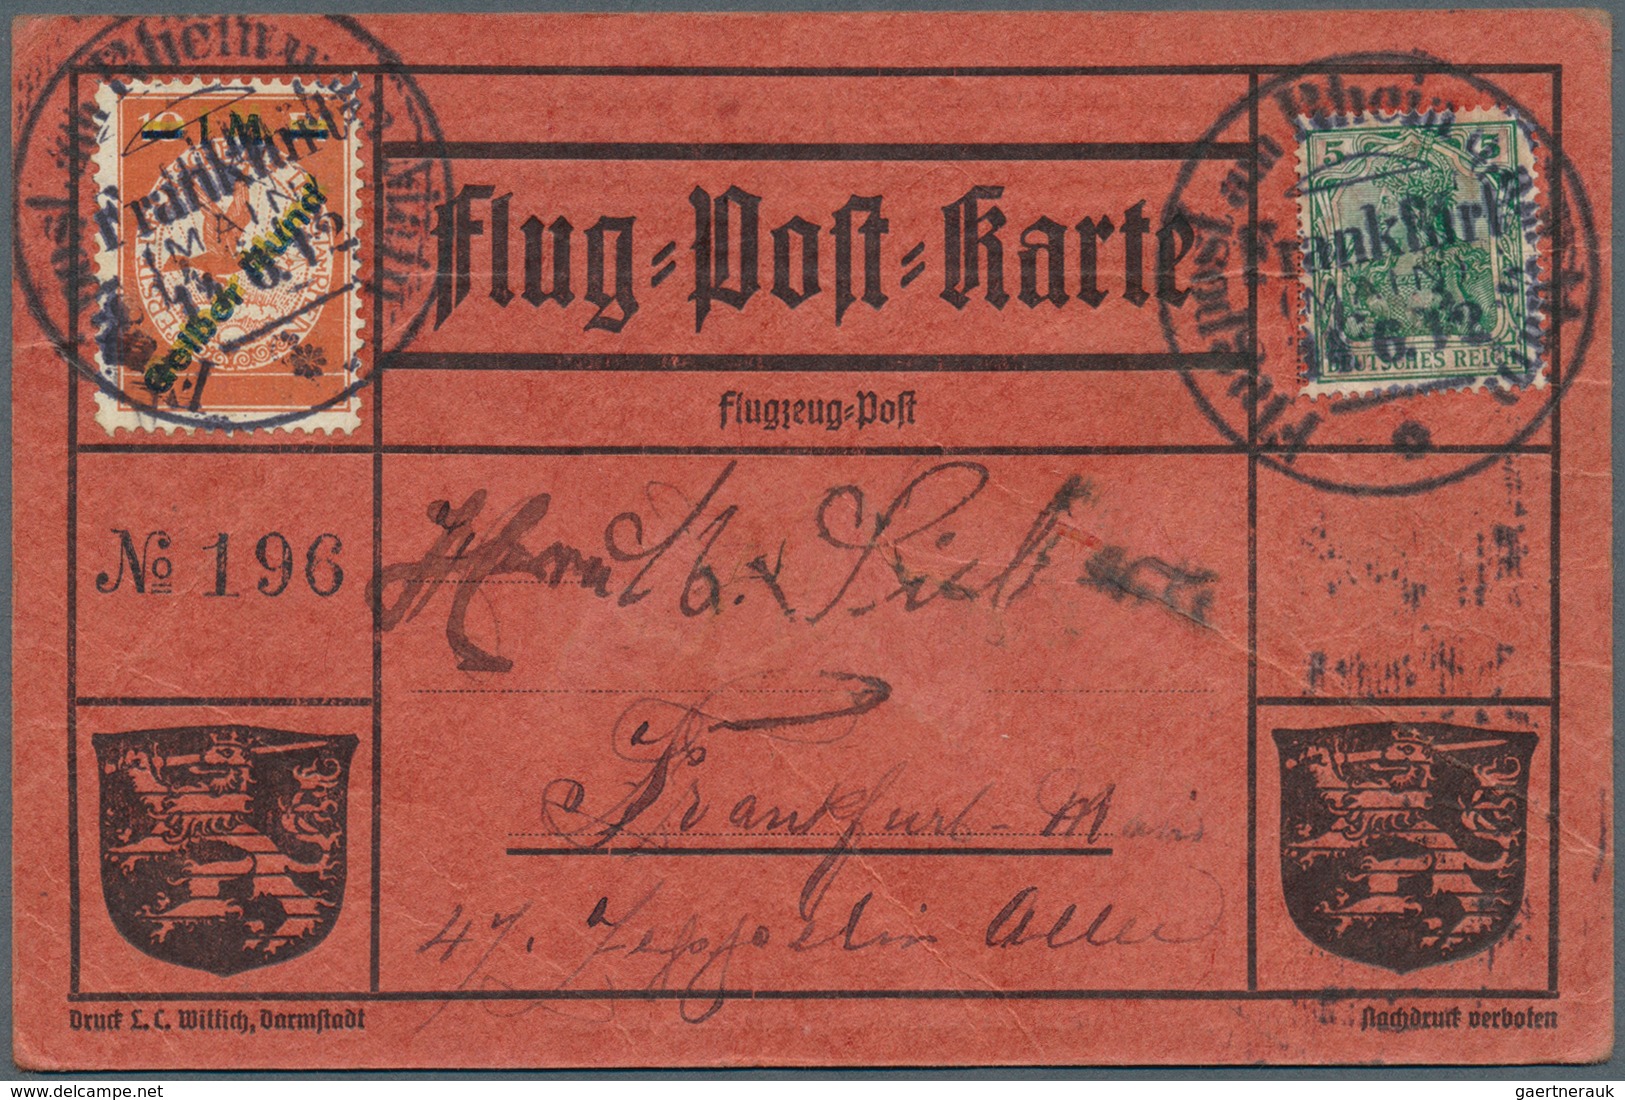 17955 Deutsches Reich - Germania: 1912, FLUGPOST RHEIN-MAIN "GELBER HUND" Doppel-Aufdruckmarke Auf Erst 20 - Unused Stamps